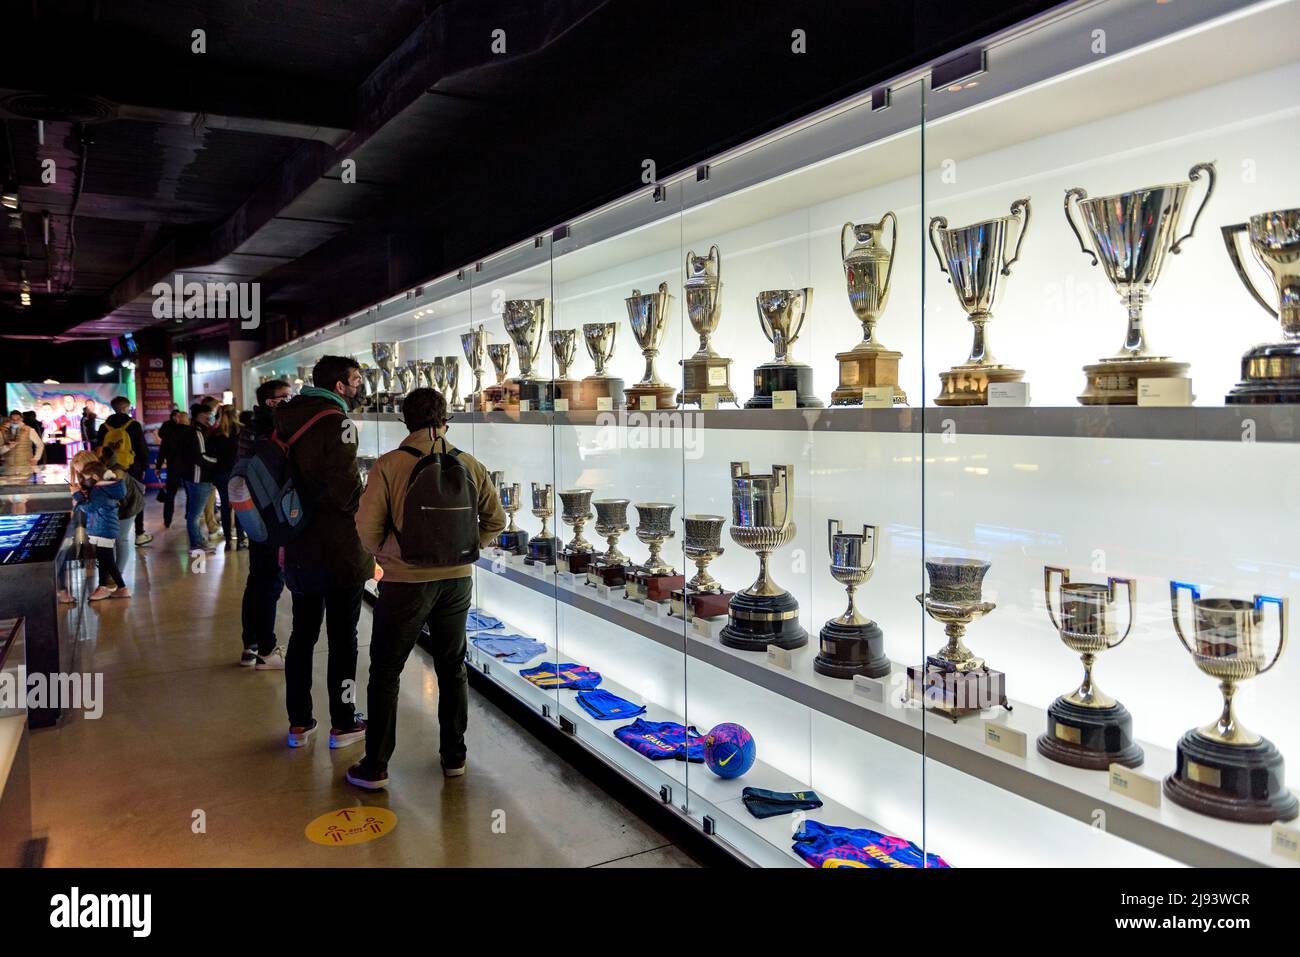 Trofei nel Museo FC Barcelona, nello stadio Camp Nou (Barcellona, Catalogna, Spagna) ESP: Trofeos en el Museo del FC Barcelona, en el Camp Nou Foto Stock